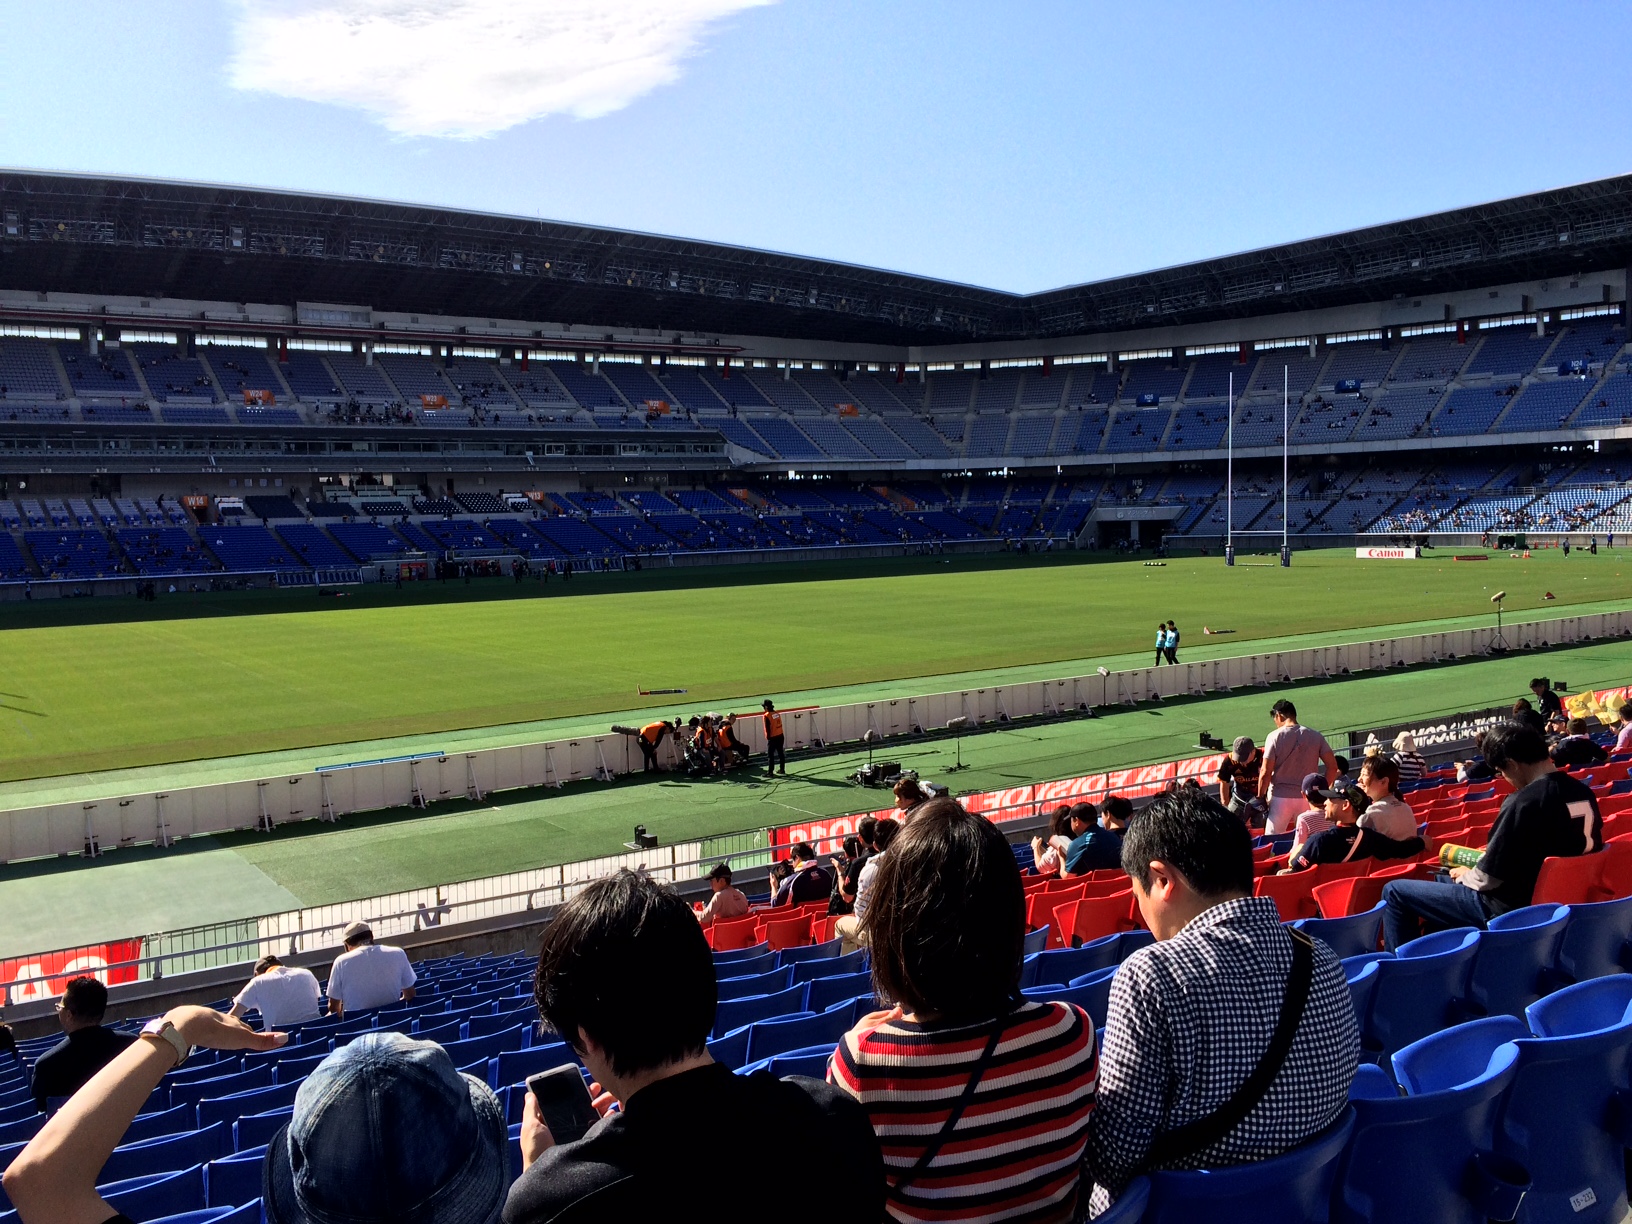 My view at Nissan Stadium, Yokohama